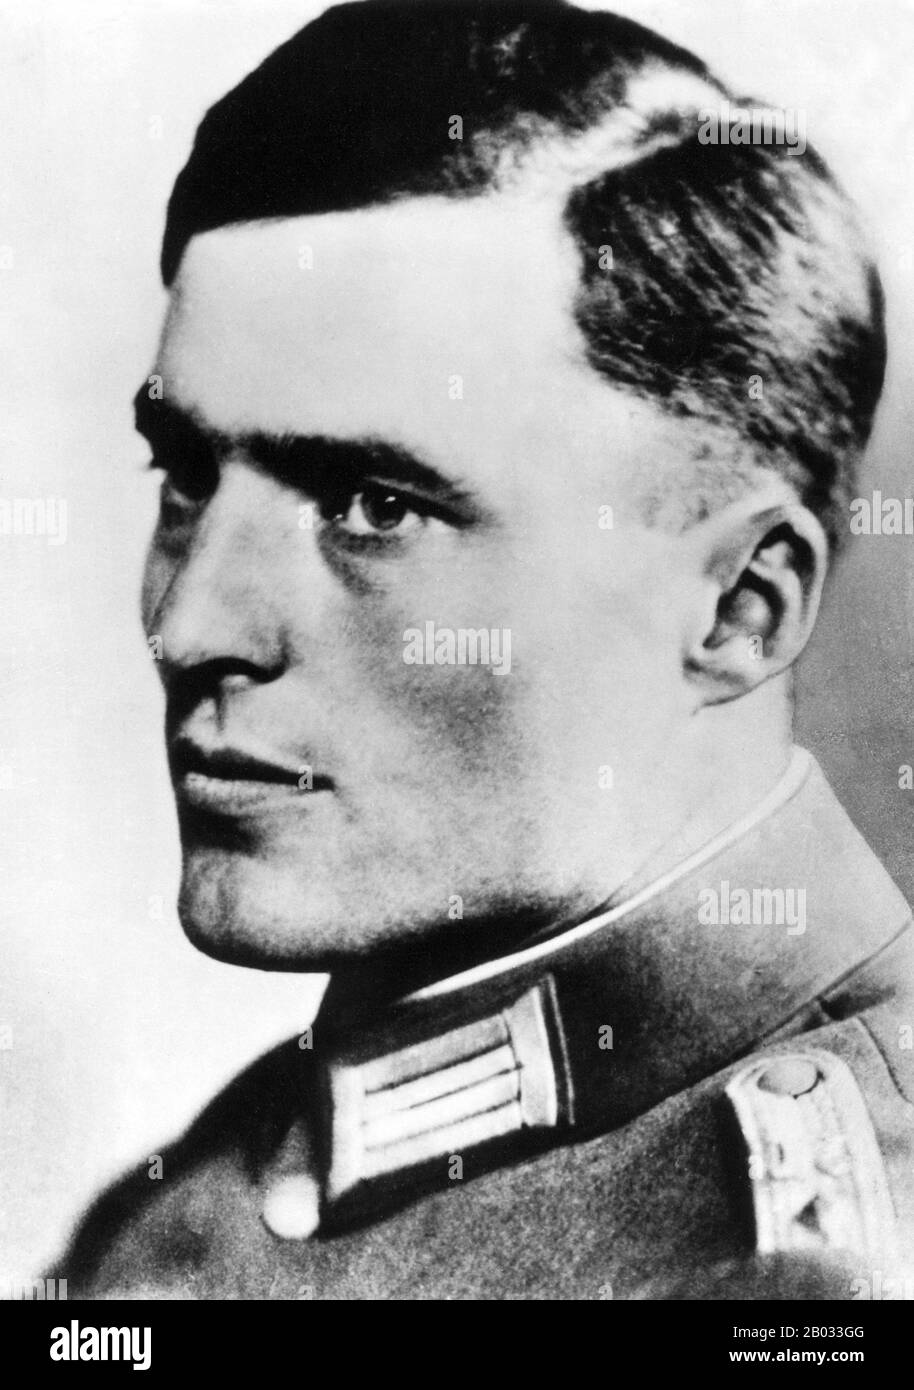 Claus Philipp Maria Schenk Graf von Stauffenberg, comúnmente conocido como Claus Schenk Graf von Stauffenberg (15 de noviembre de 1907 – 21 de julio de 1944), Era un oficial del ejército alemán y miembro de la nobleza alemana tradicional que era uno de los miembros principales del complot fallido del 20 de julio de 1944 para asesinar a Adolf Hitler y sacar al Partido Nazi del poder. Junto con Henning von Tresckow y Hans Oster, fue una de las figuras centrales del movimiento de Resistencia alemán dentro de la Wehrmacht. Por su participación en el movimiento fue ejecutado por un escuadrón de fusilamiento poco después del fallido intento conocido como Foto de stock